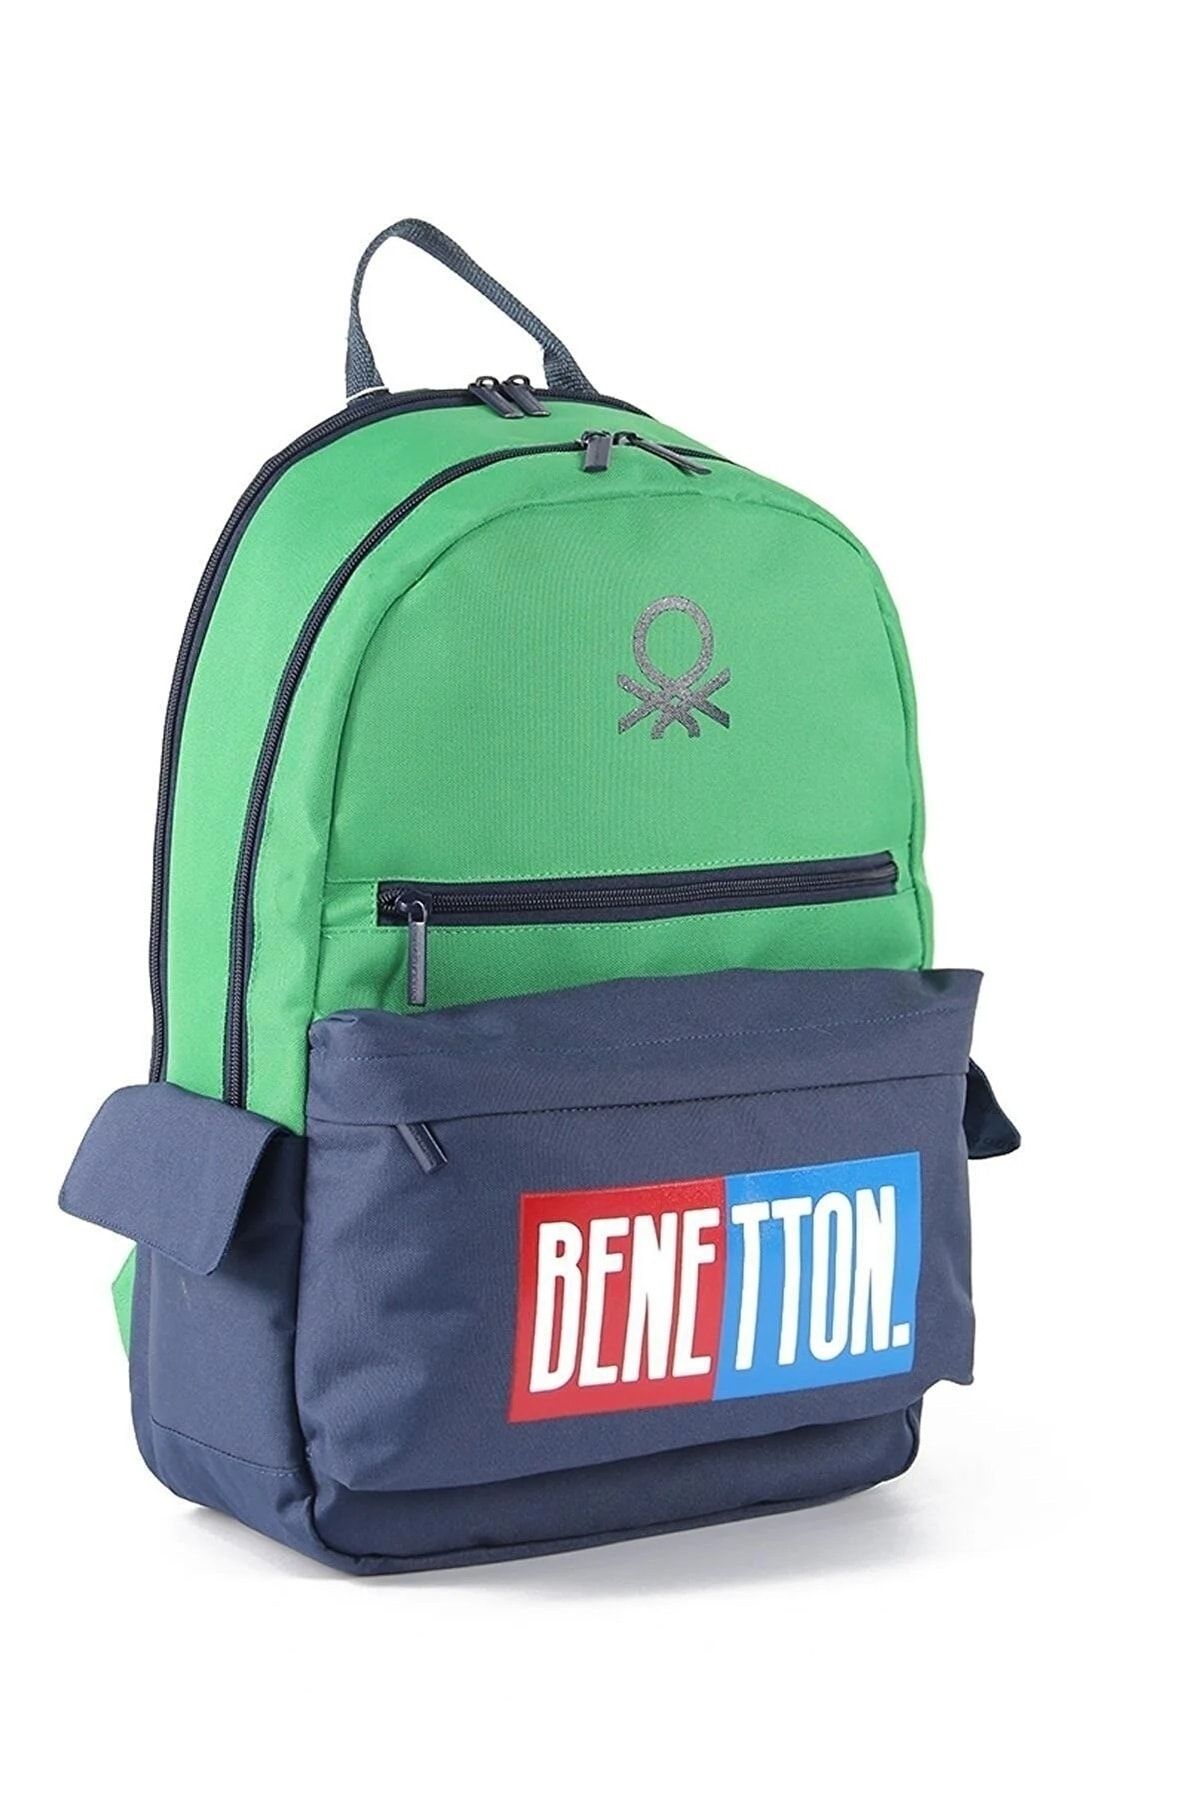 United Colors of Benetton 03785 Okul çantası ortaokul lise öğrenci YEŞİL